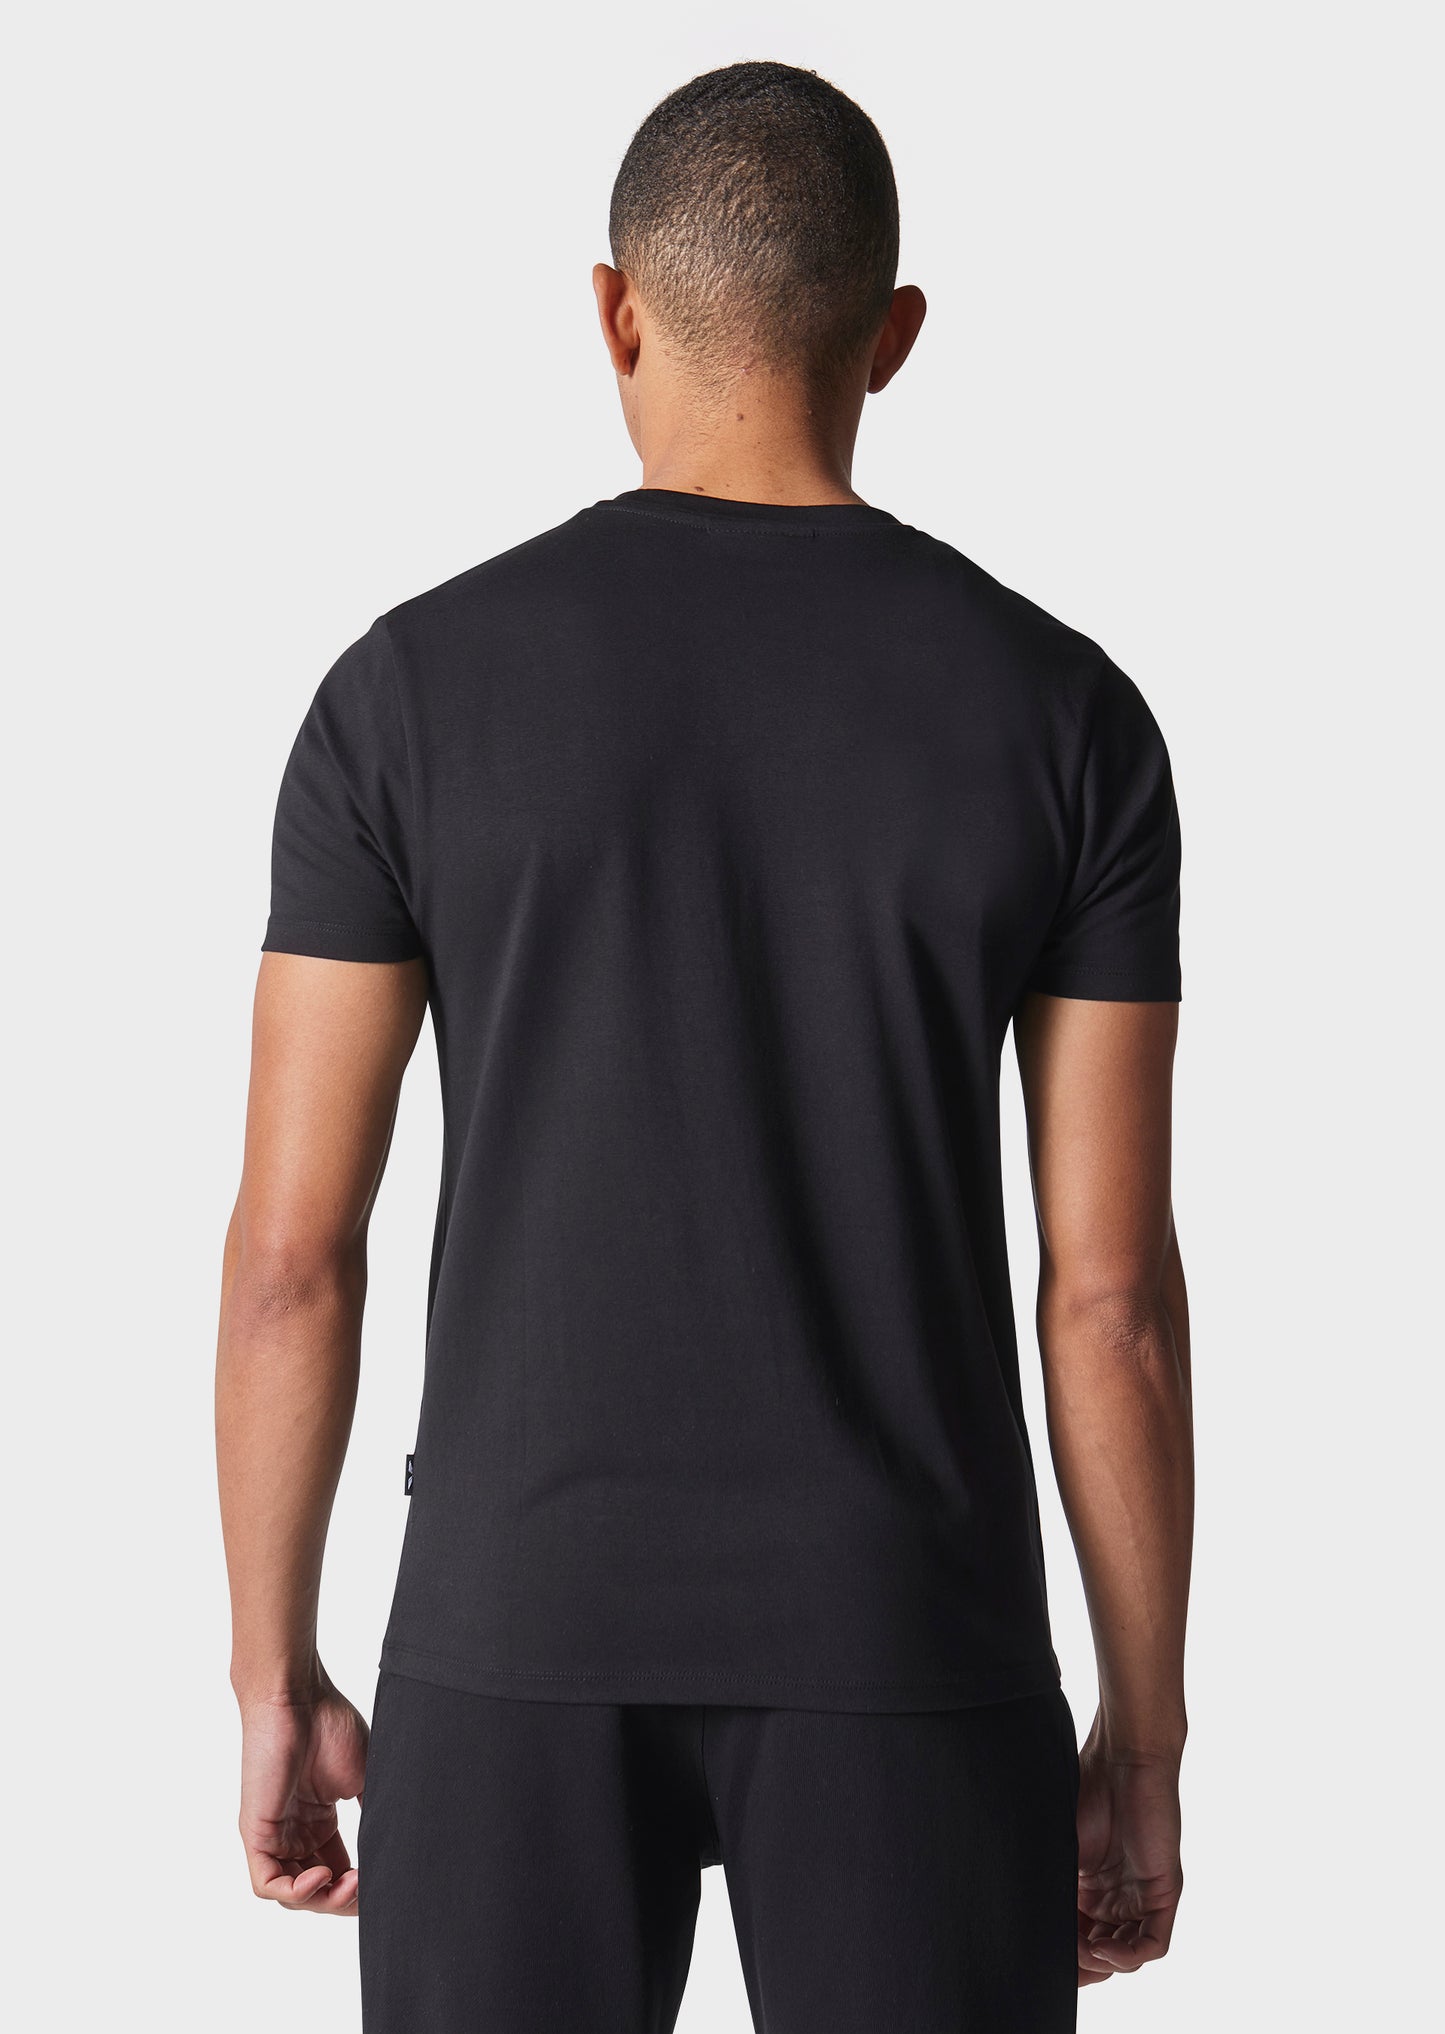 Kosis Black T-Shirt